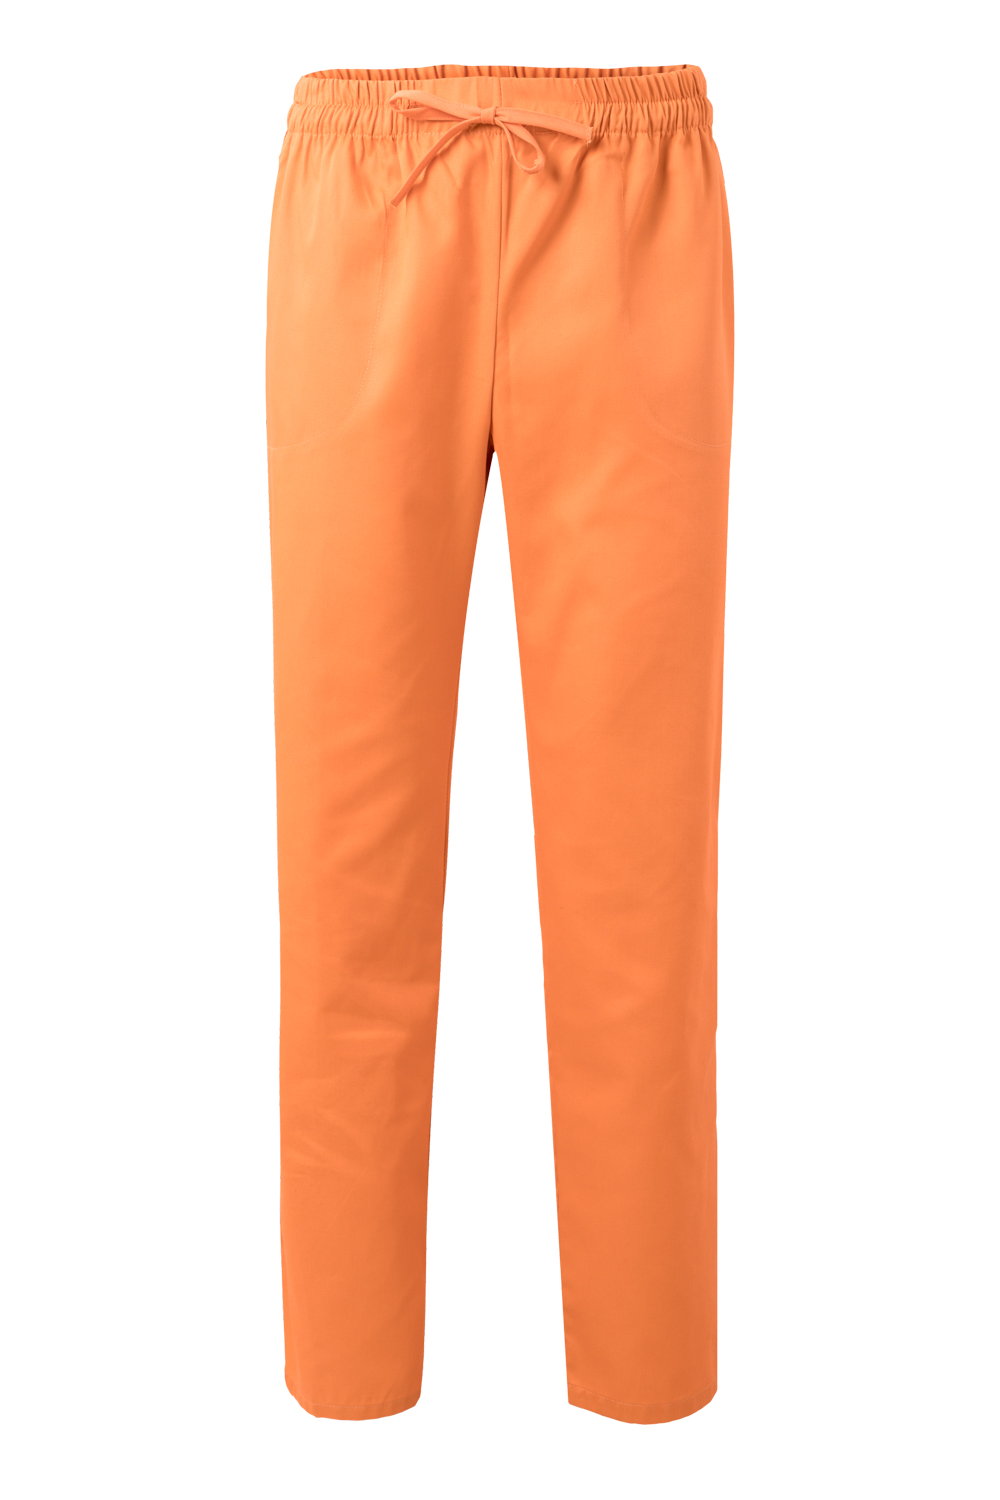 VELILLA GROUP EUROPE S.L.U. Dámske kuchárske nohavice - oranžová M